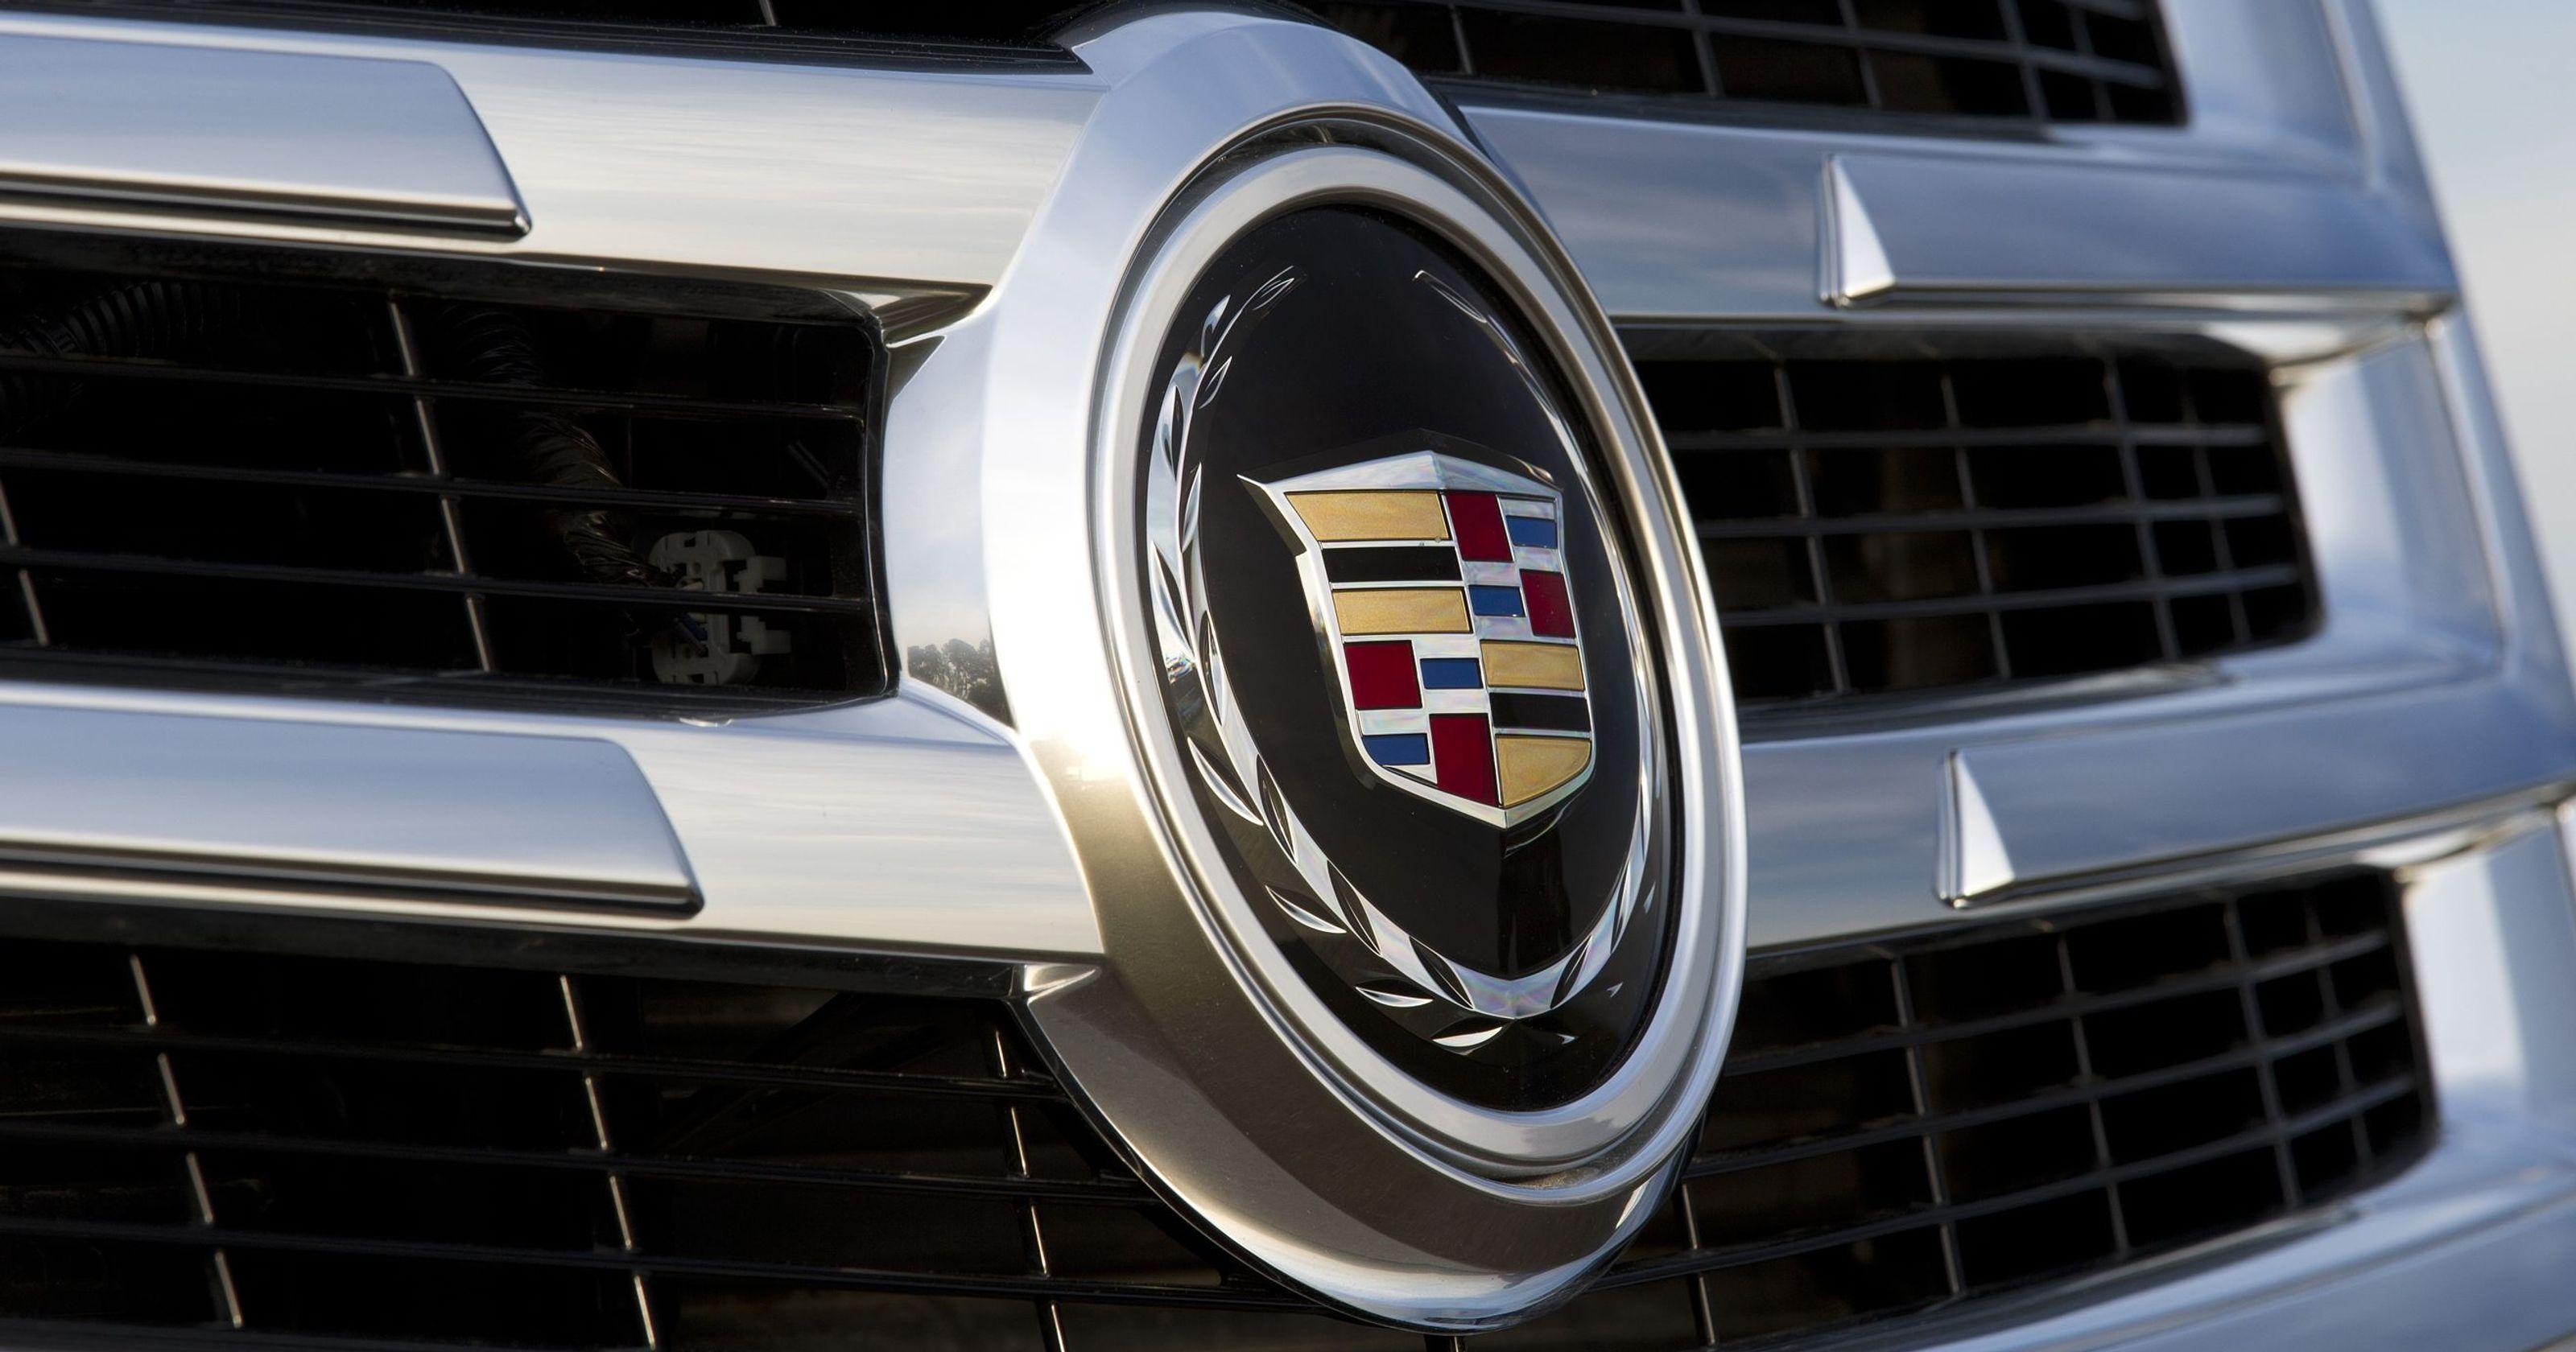 Escalade Logo - Almost all-new Escalade has old Cadillac badge